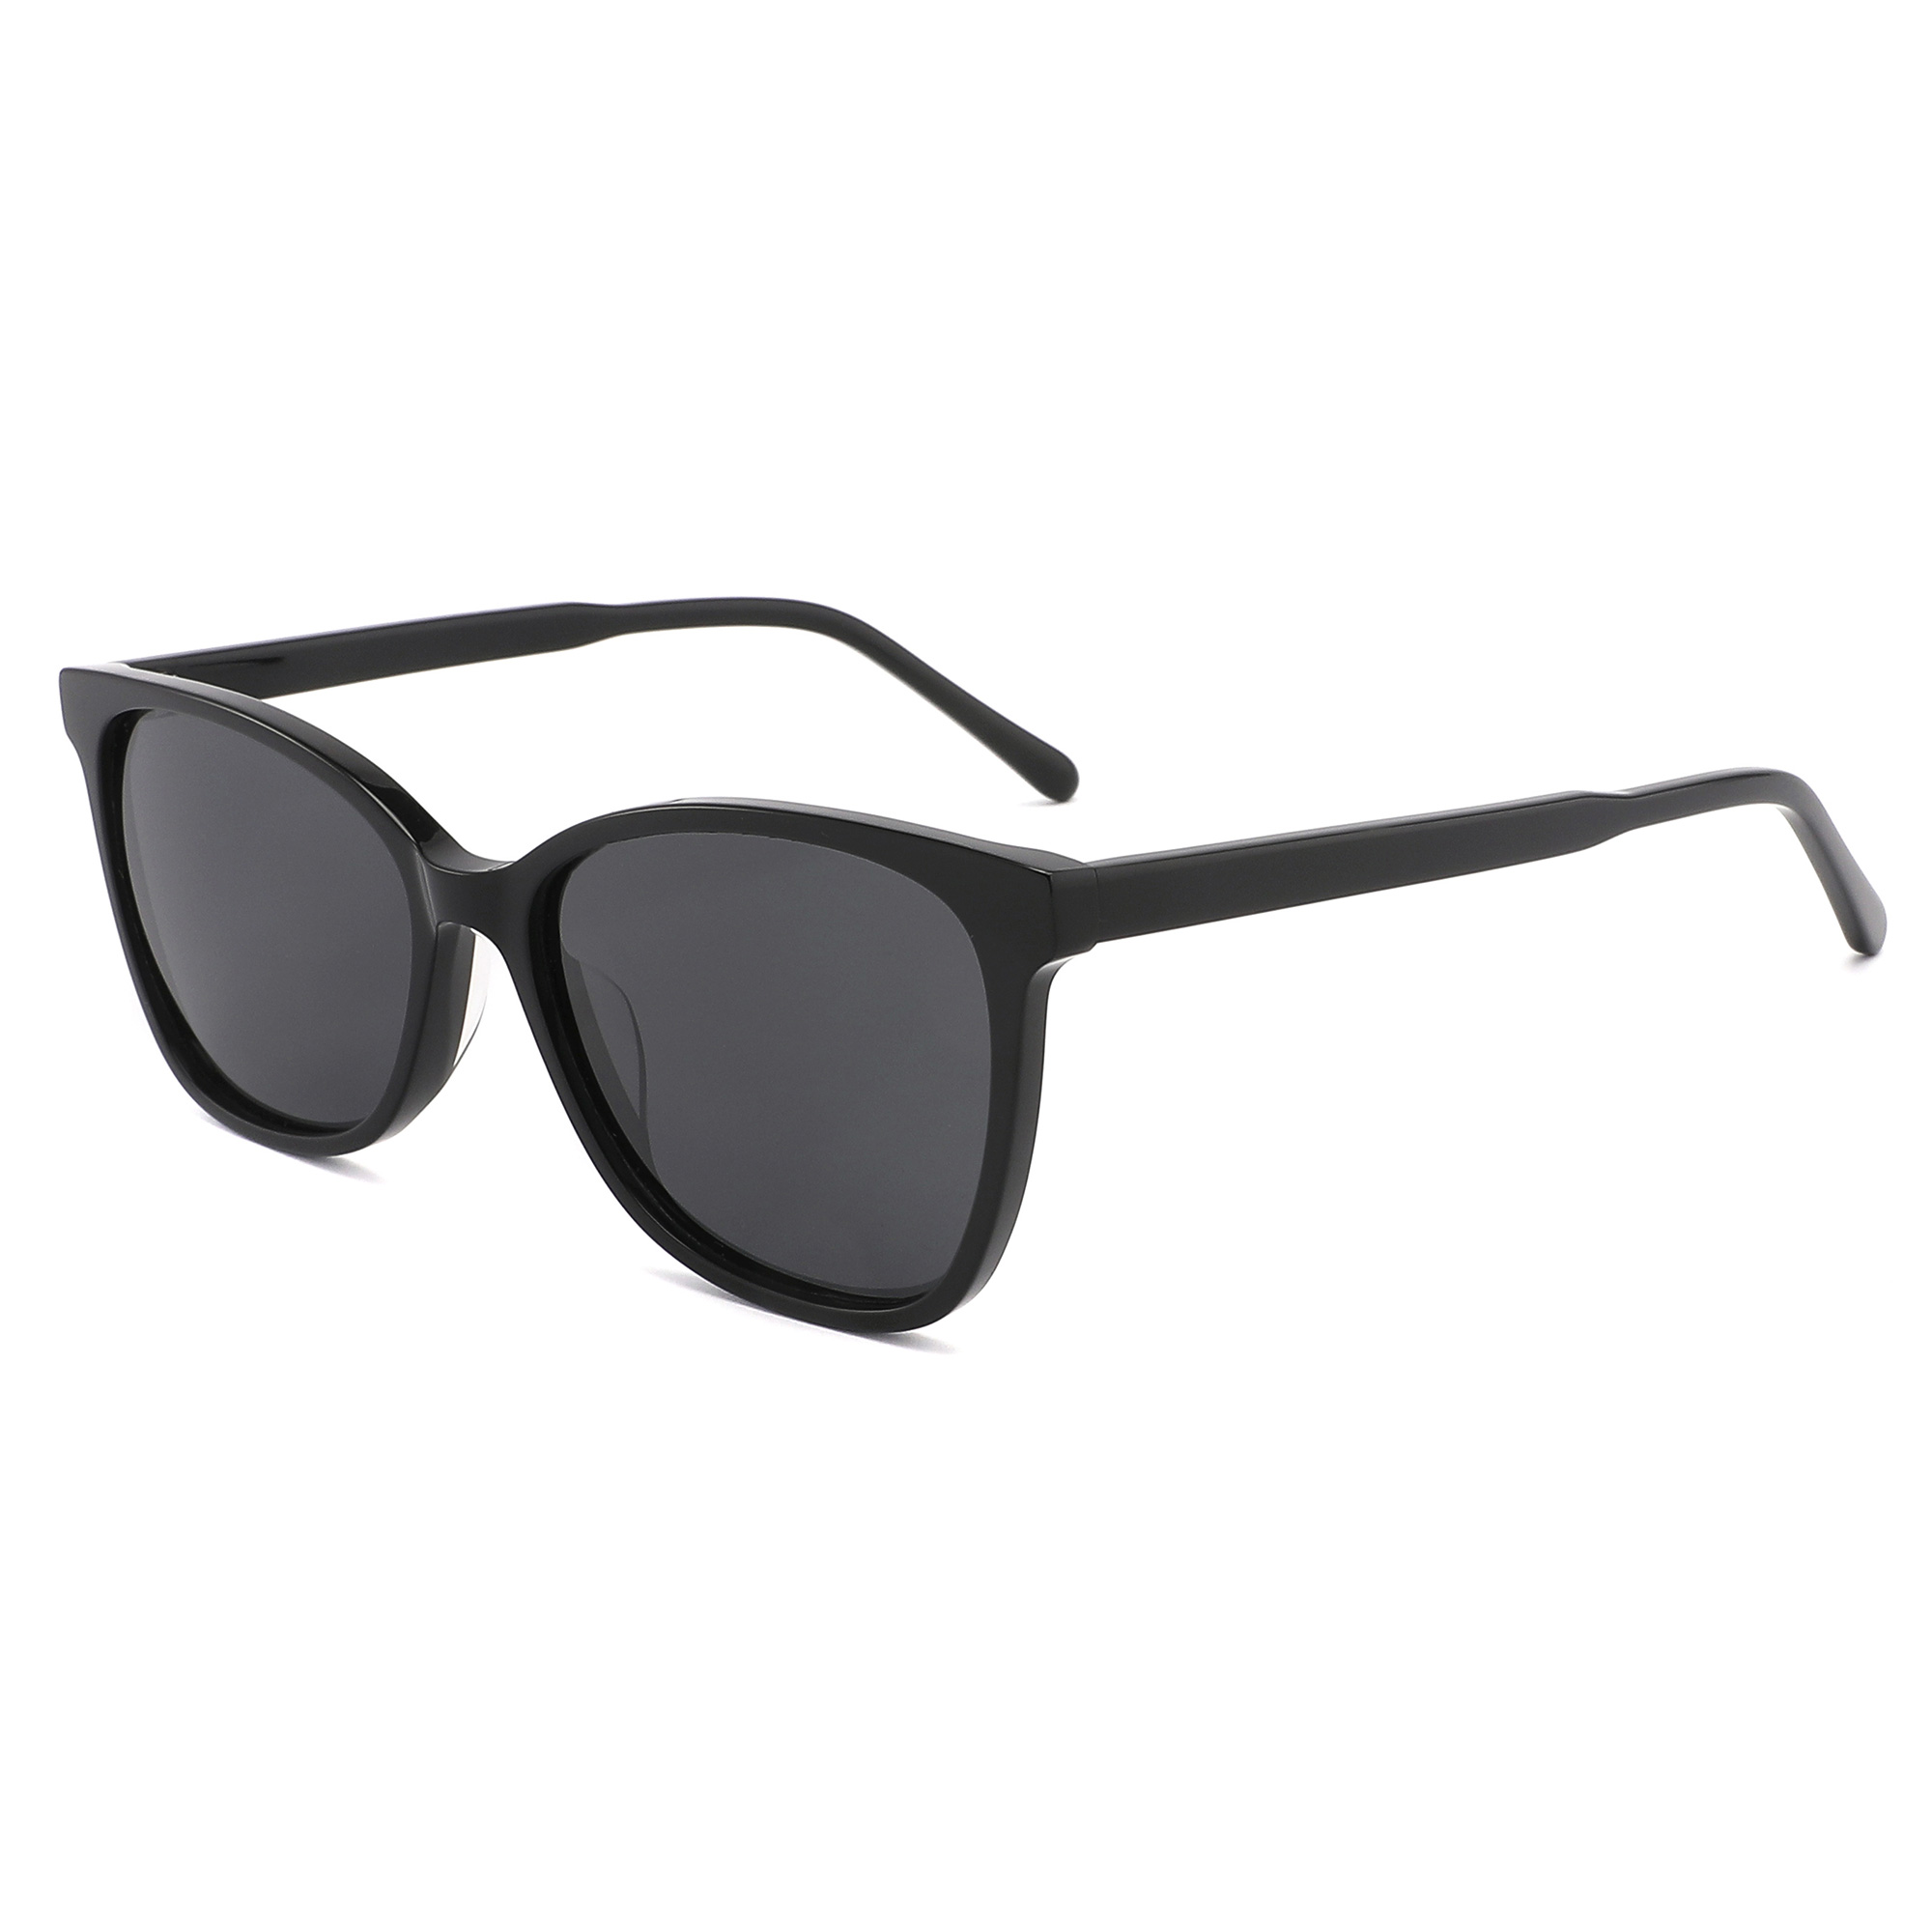 Gafas de sol de acetato EUGENIA para hombre, gafas de sol femeninas de moda al por mayor, gafas de sol para viajes al aire libre, envío directo